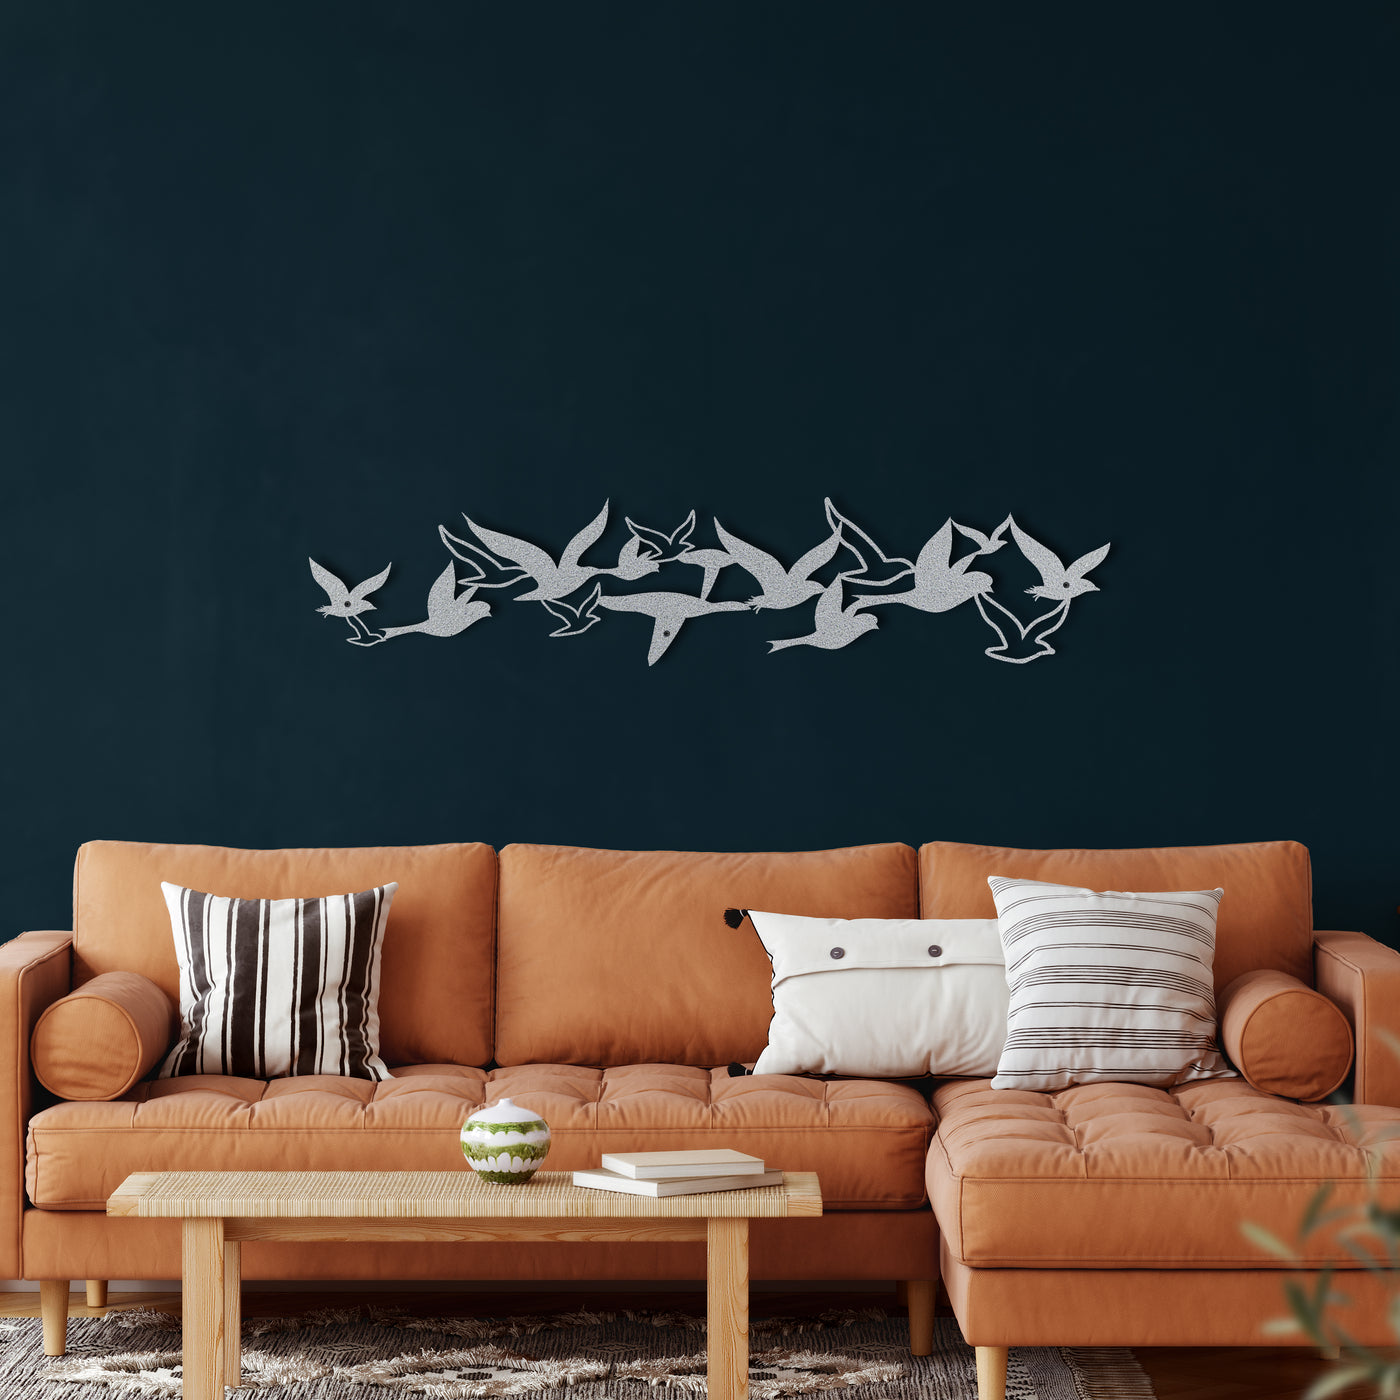 Déco Murale en Métal Avec Troupeau d'oiseaux Volants